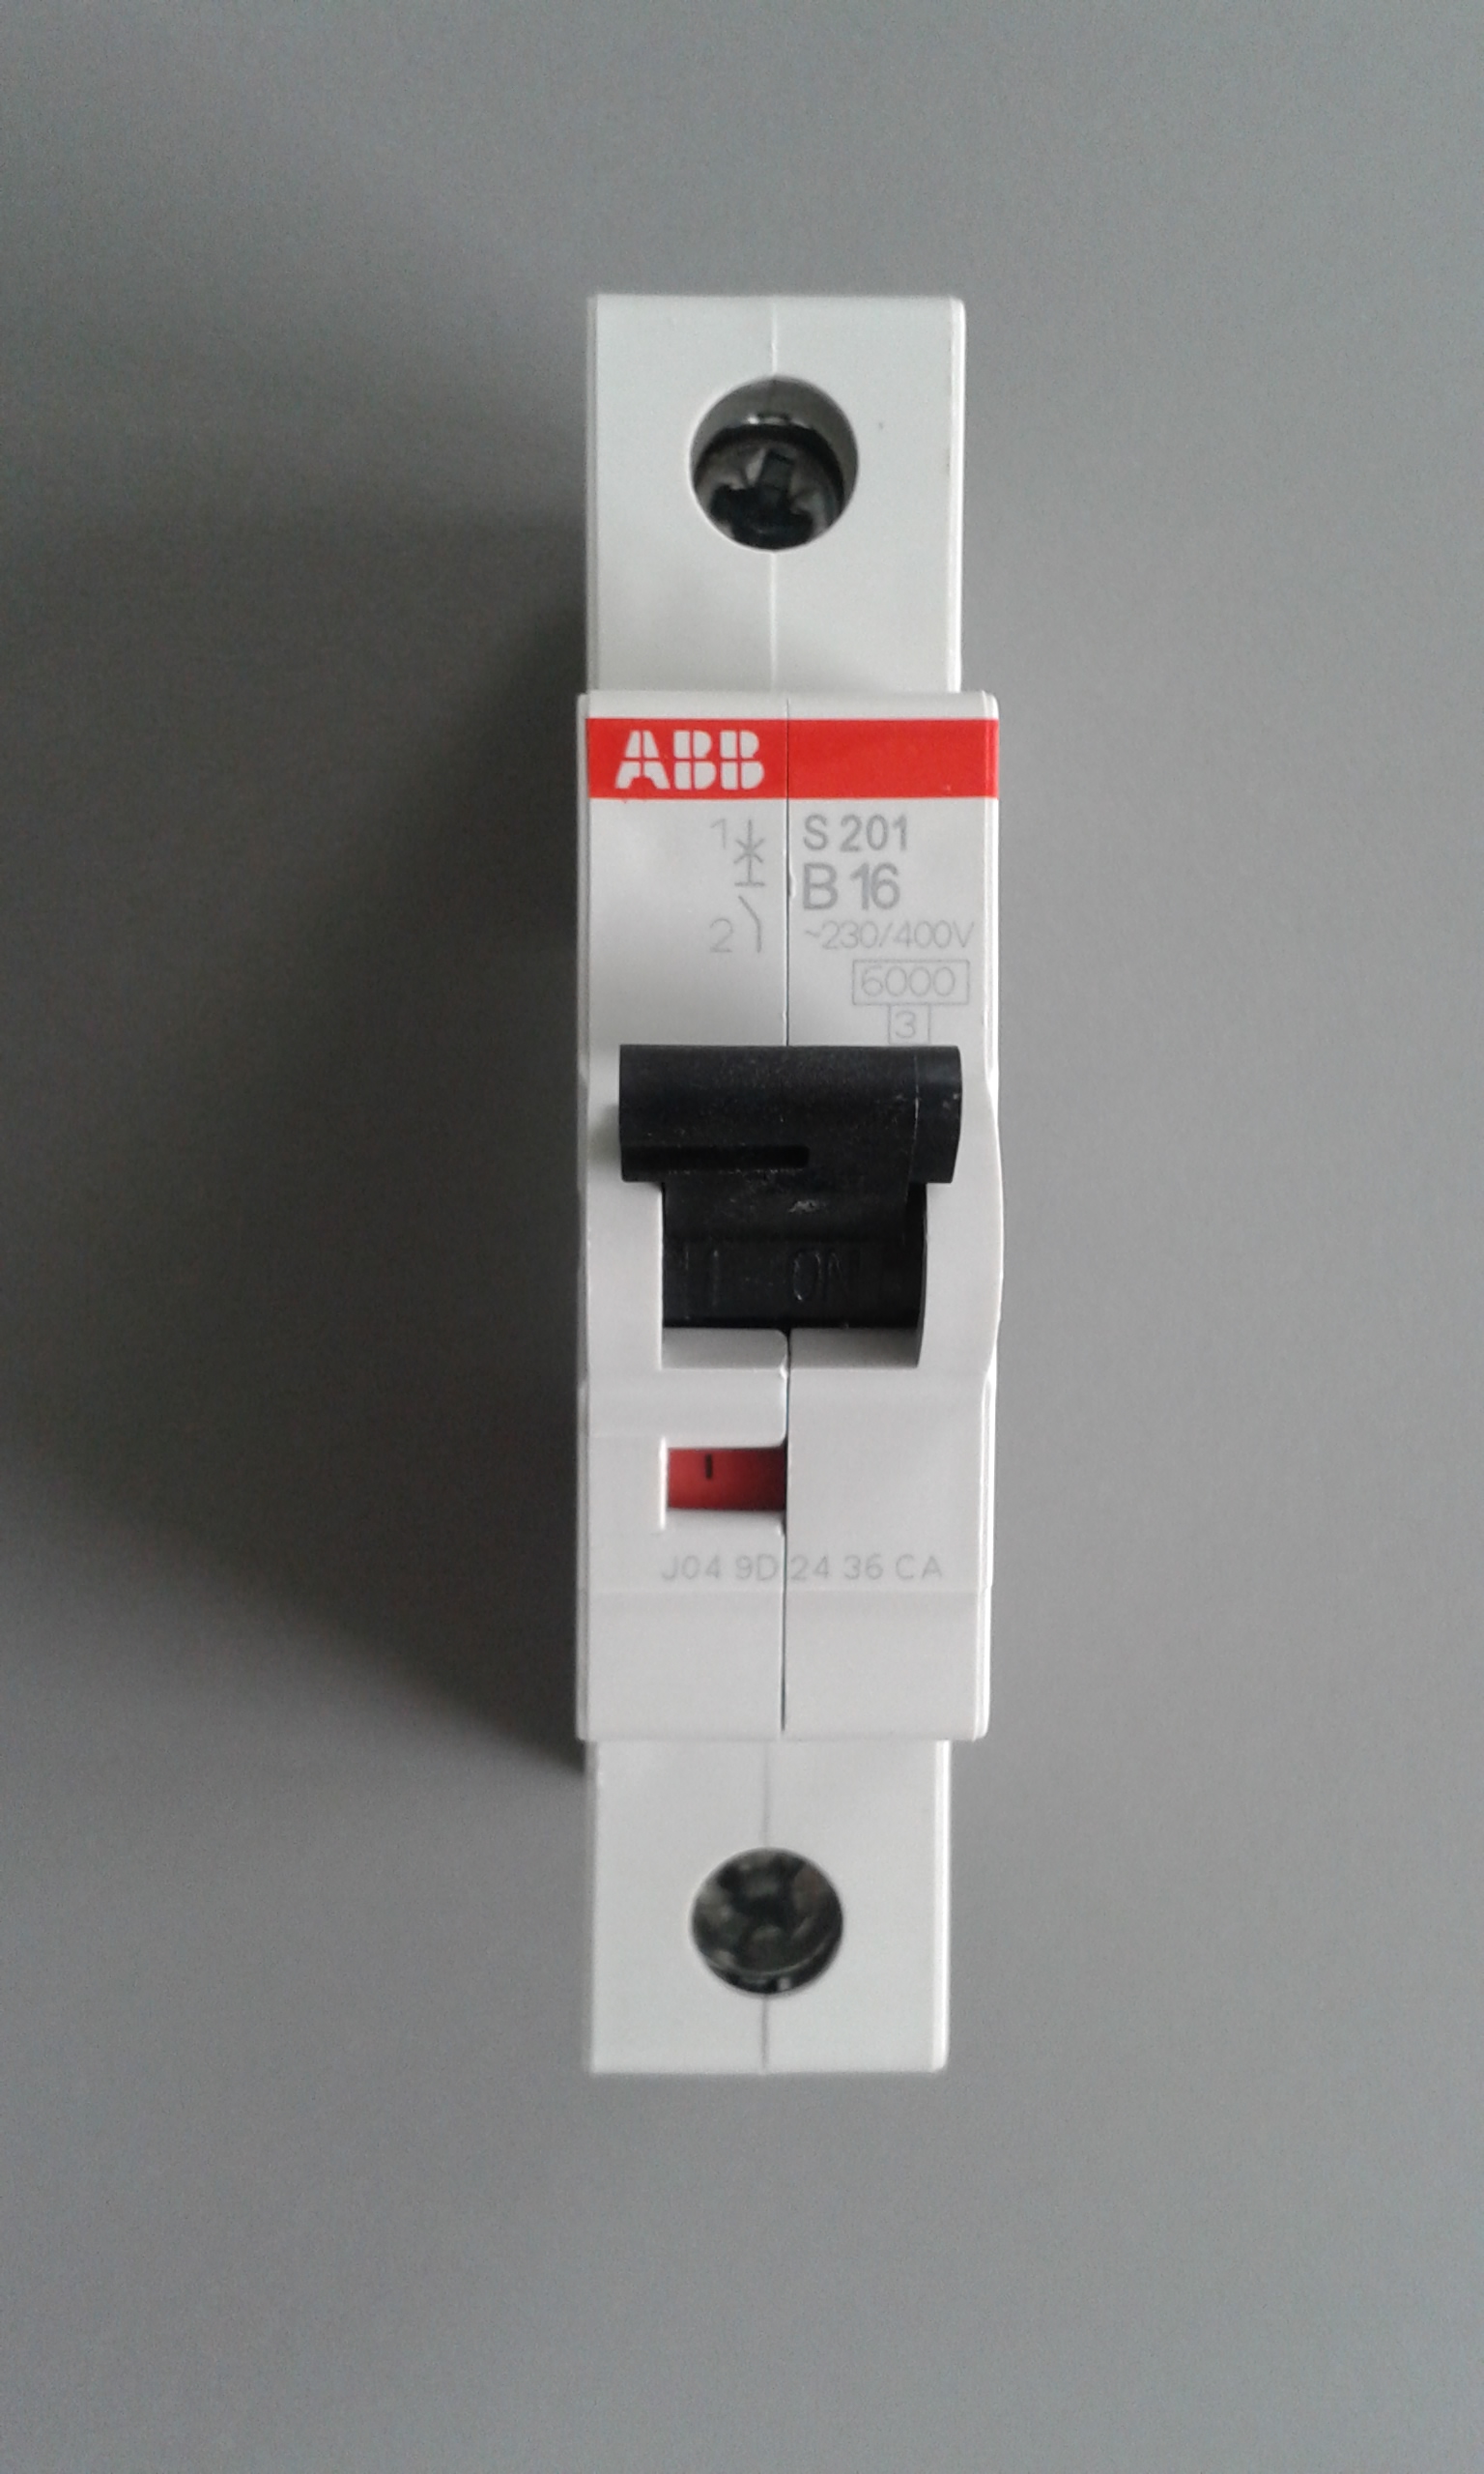 Автоматический выключатель авв 16а. ABB s201 c16. Автоматический выключатель ABB s201. Автоматический выключатель ABB c16. Автомат ABB 16a однополюсный.